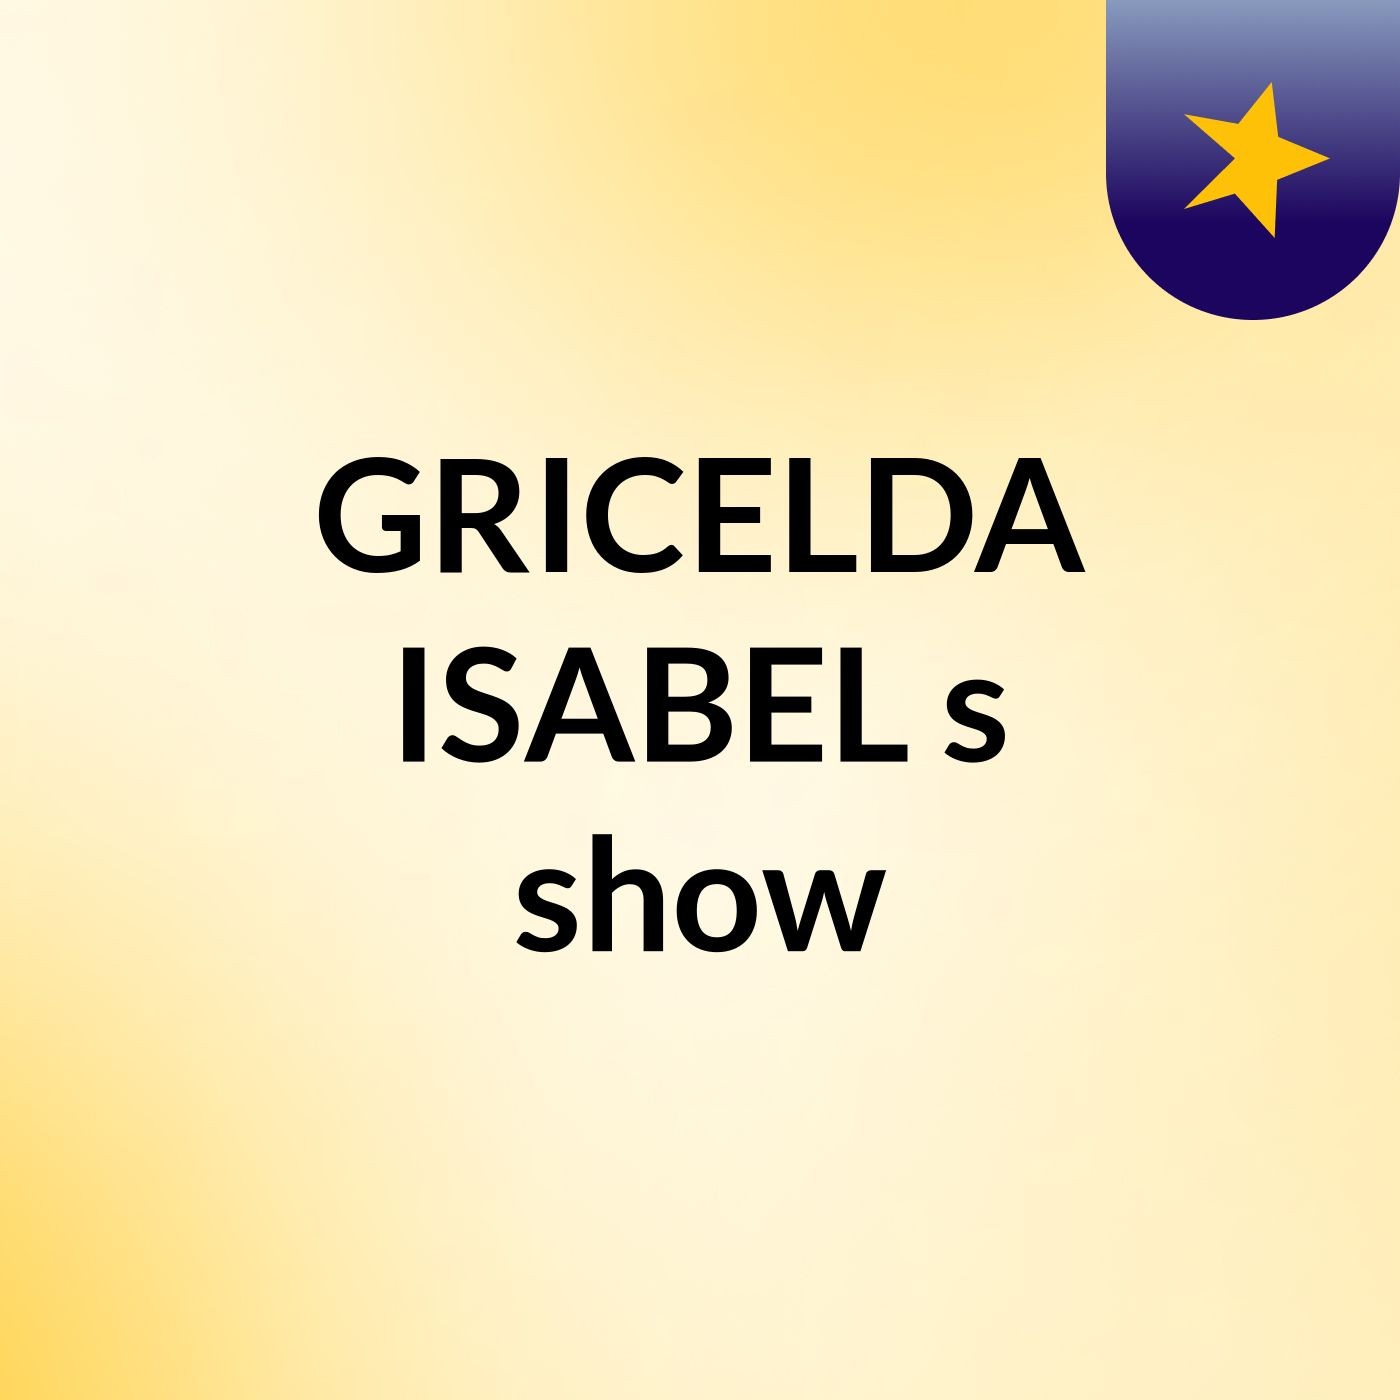 GRICELDA ISABEL's show